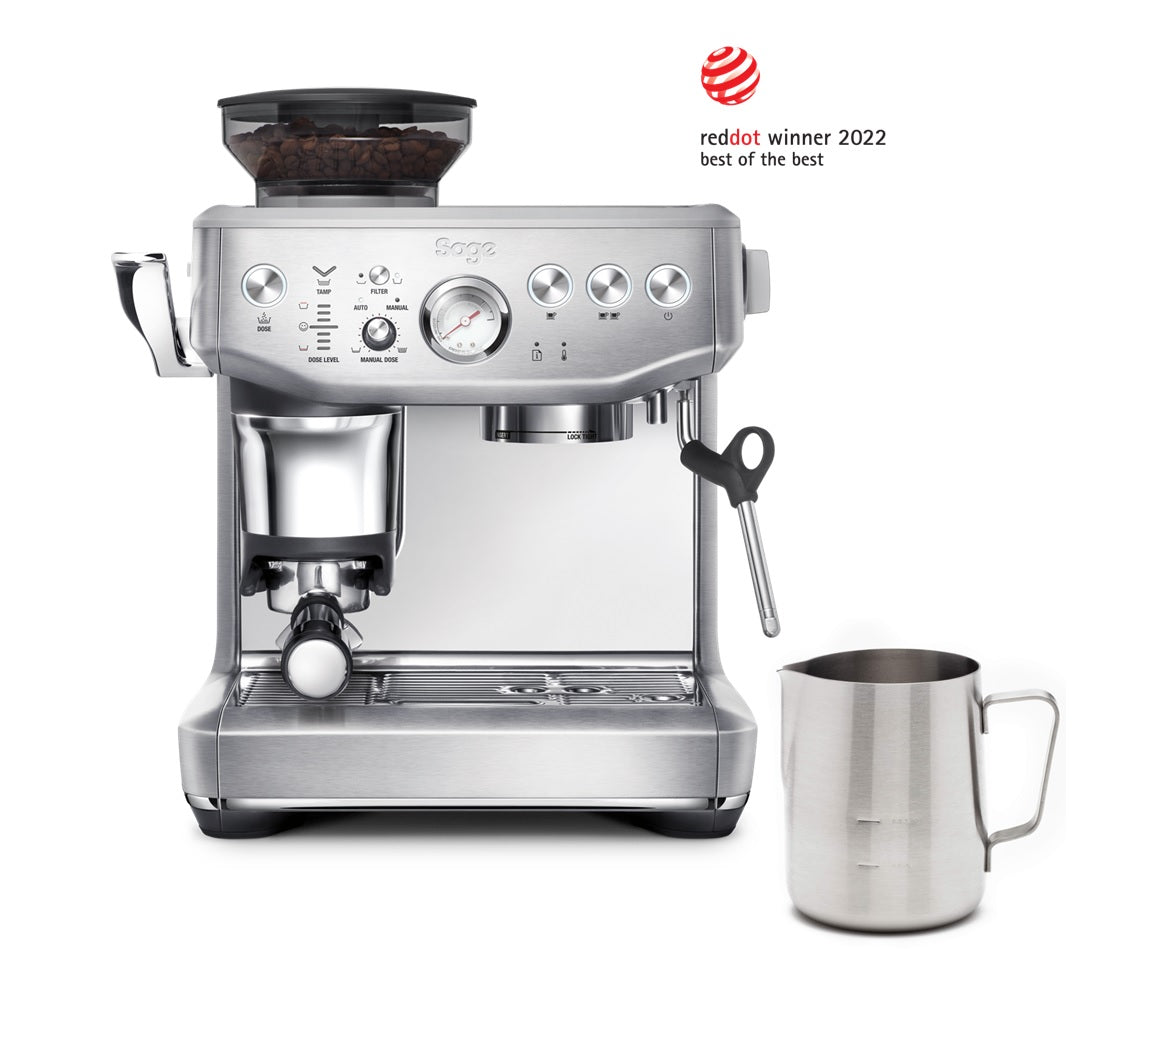 Sage macchina per Caffe' Espresso The Barista Express Impress con macina caffè e pressatura assistita con torsione professionale